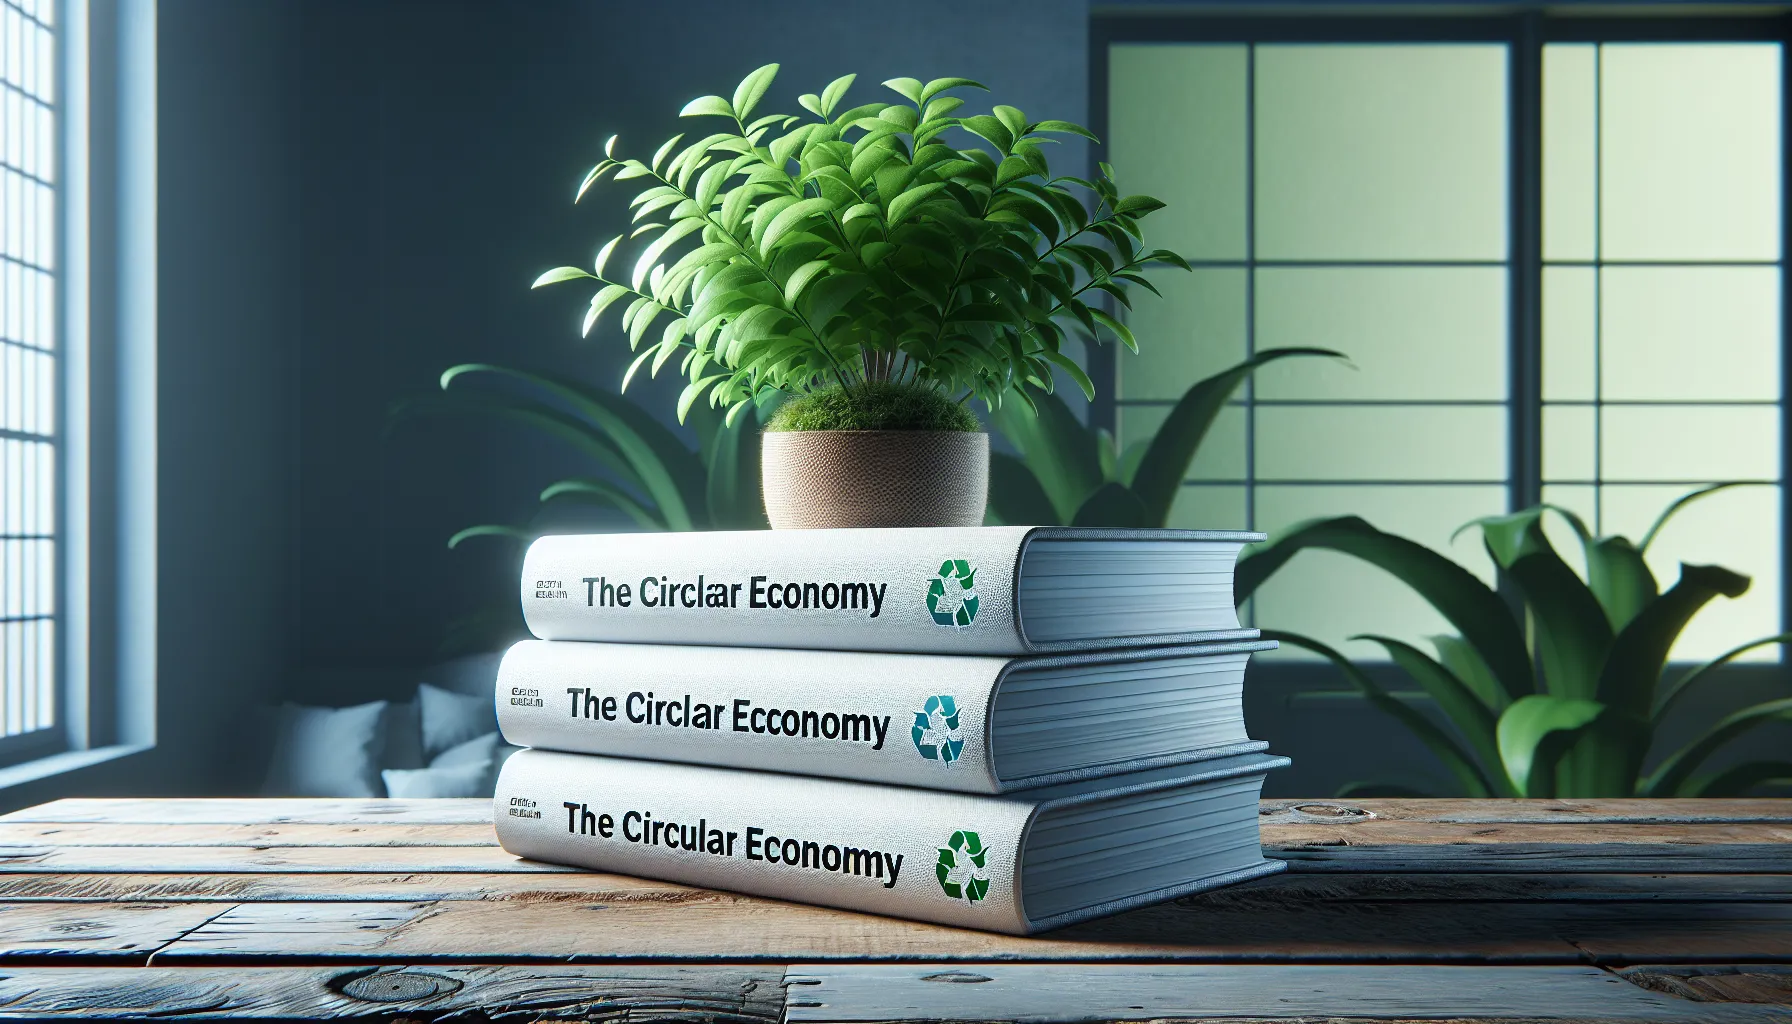 A Economia Circular é um conceito que busca transformar a forma como produzimos, consumimos e descartamos os recursos. Se você está interessado em aprender mais sobre esse assunto, existem alguns livros que podem te ajudar a entender melhor o conceito da Economia Circular. Aqui estão algumas sugestões:

1. 